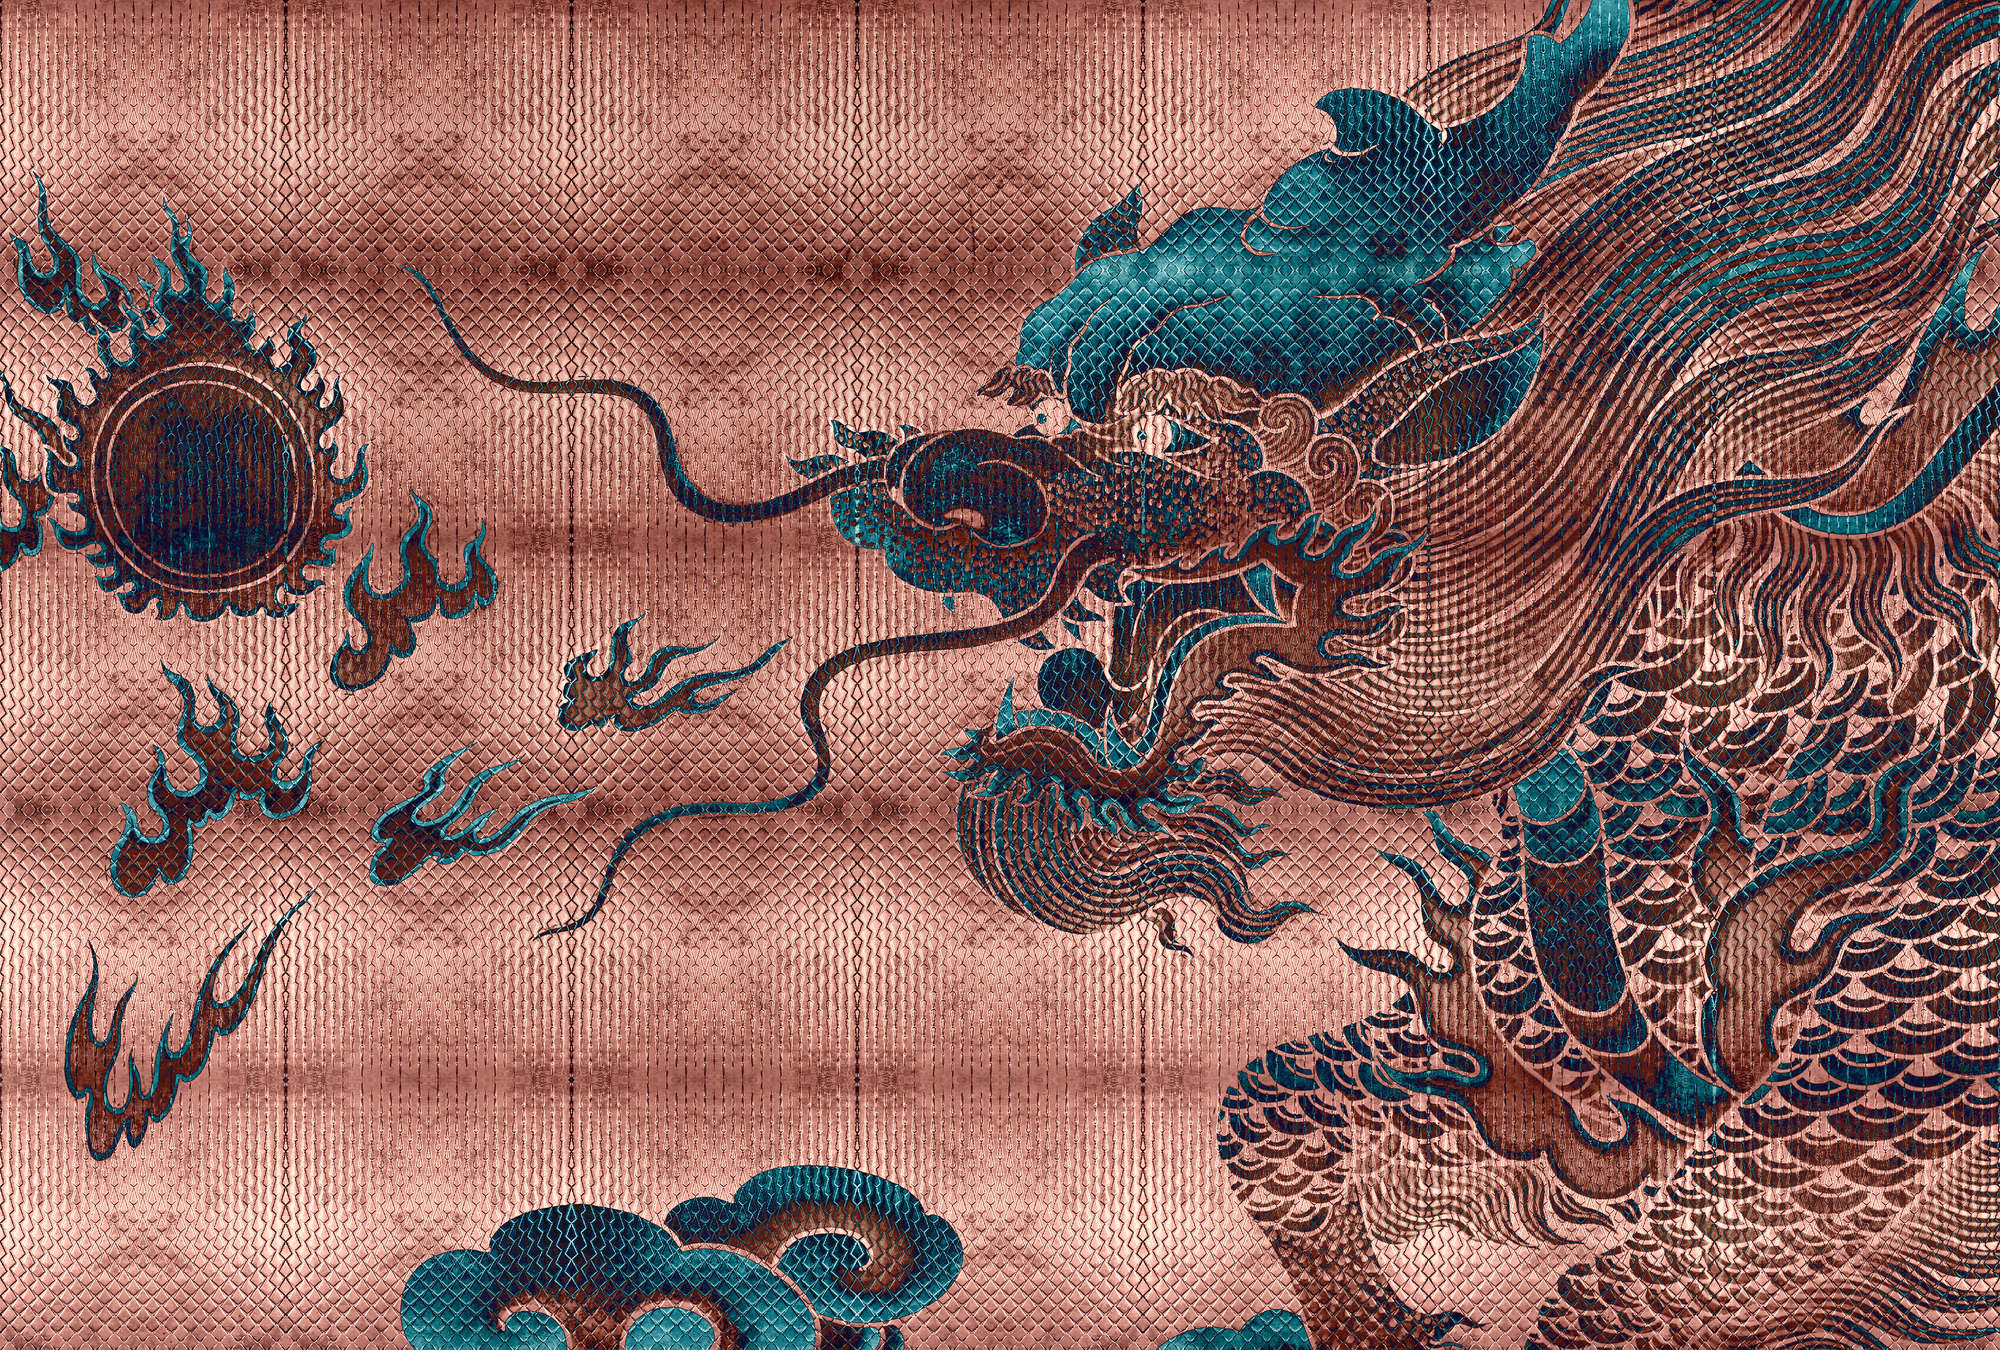             Shenzen 1 - Papier peint dragon Asian Syle avec couleurs métalliques
        